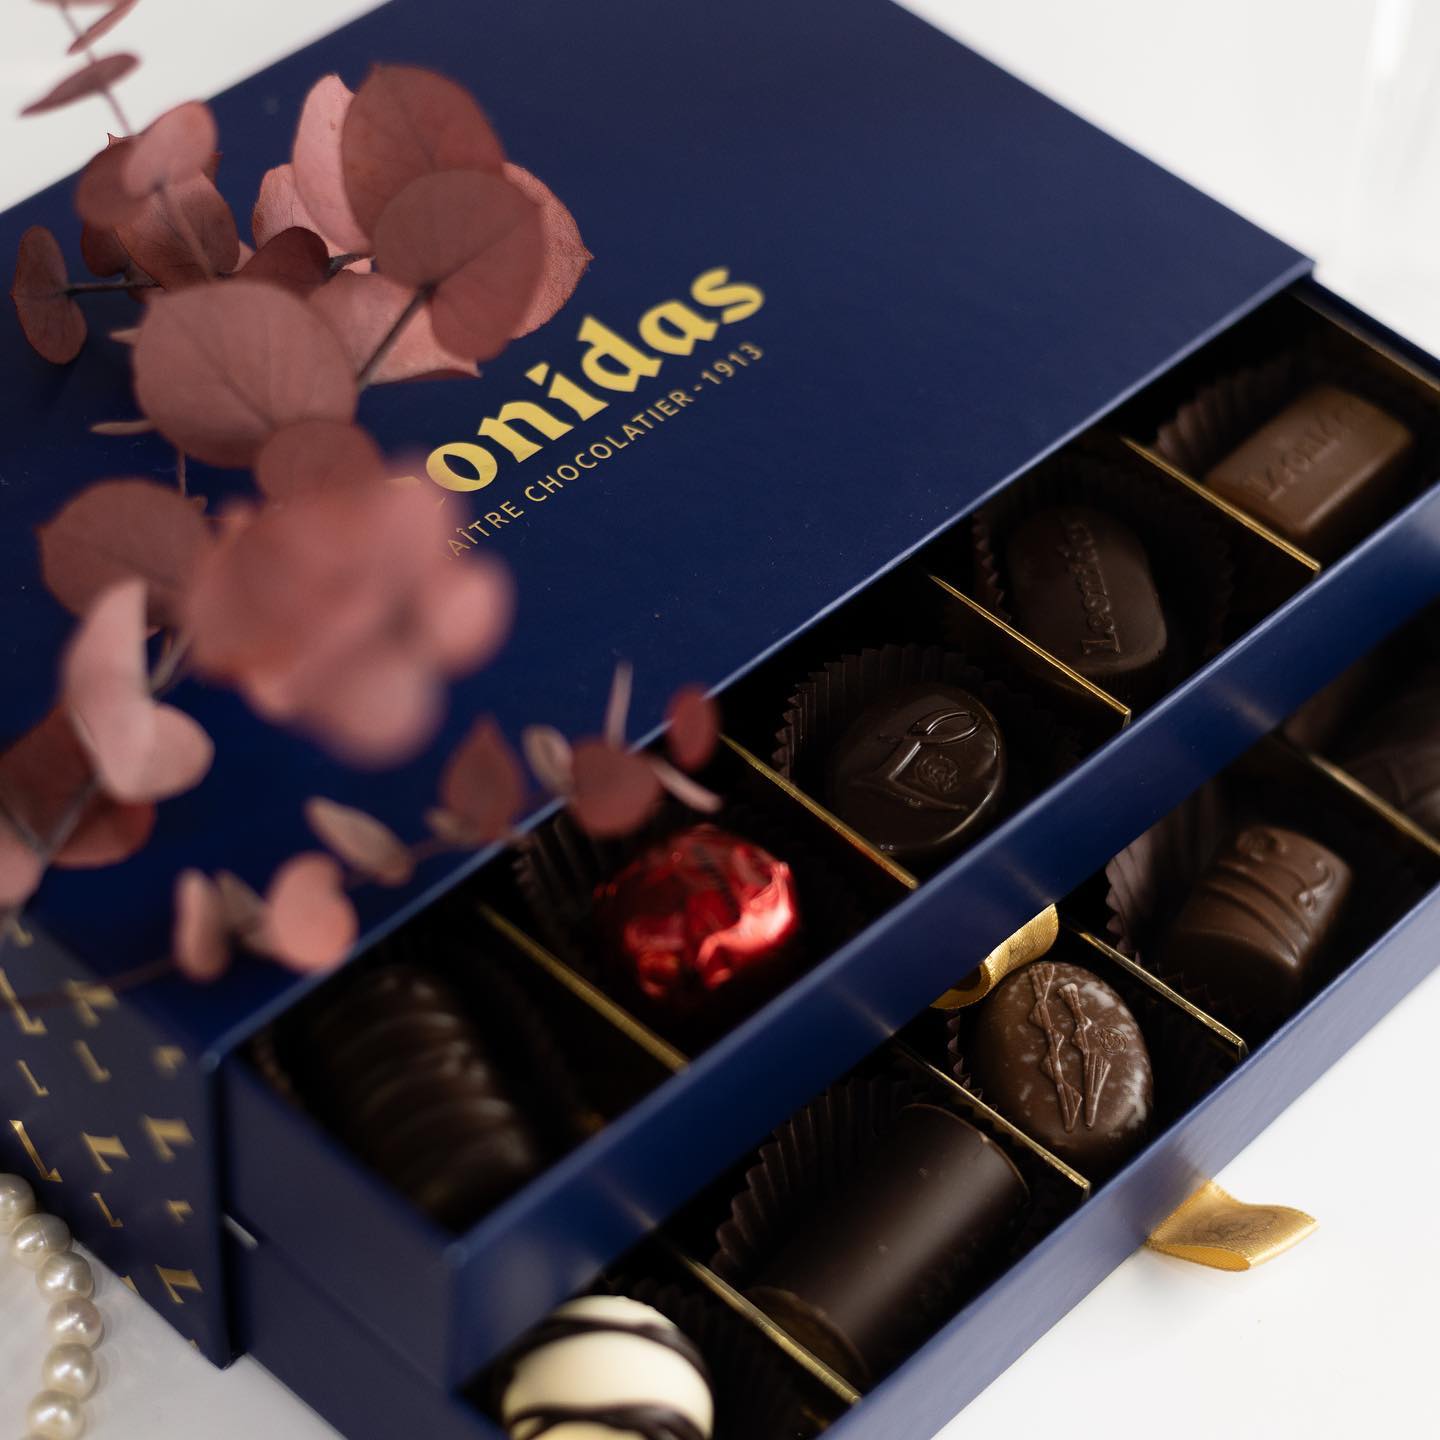 Recunoaște-ți iubirea într-un mod original. Și cel mai delicios ciocolată din lume te va ajuta!
Ambalajul elegant și aroma de neuitat. Colecțiile «Ziua Îndrăgostiților» sunt deja în magazinul nostru de ciocolată, deci nu vei avea motive să uiți să cumperi un cadou pentru jumătatea ta!
Și amintește-ți, ciocolata este cea mai bună recunoaștere a iubirii.

📮Sfatul Țării 15
☎️07 99 88 018
🌎leonidascafe.md
___________________________

Признайтесь в любви оригинально. А самый вкусный шоколад в мире Вам поможет! 
Элегантная упаковка и незабываемый аромат. Коллекции «День святого Валентина» уже в нашей шоколадной лавке, так что у вас не будет повода забыть купить подарок для своей второй половинки!
И помните, шоколад — это лучшее признание в любви

📮Сфатул Цэрий 15
☎️07 99 88 018
🌎leonidascafe.md